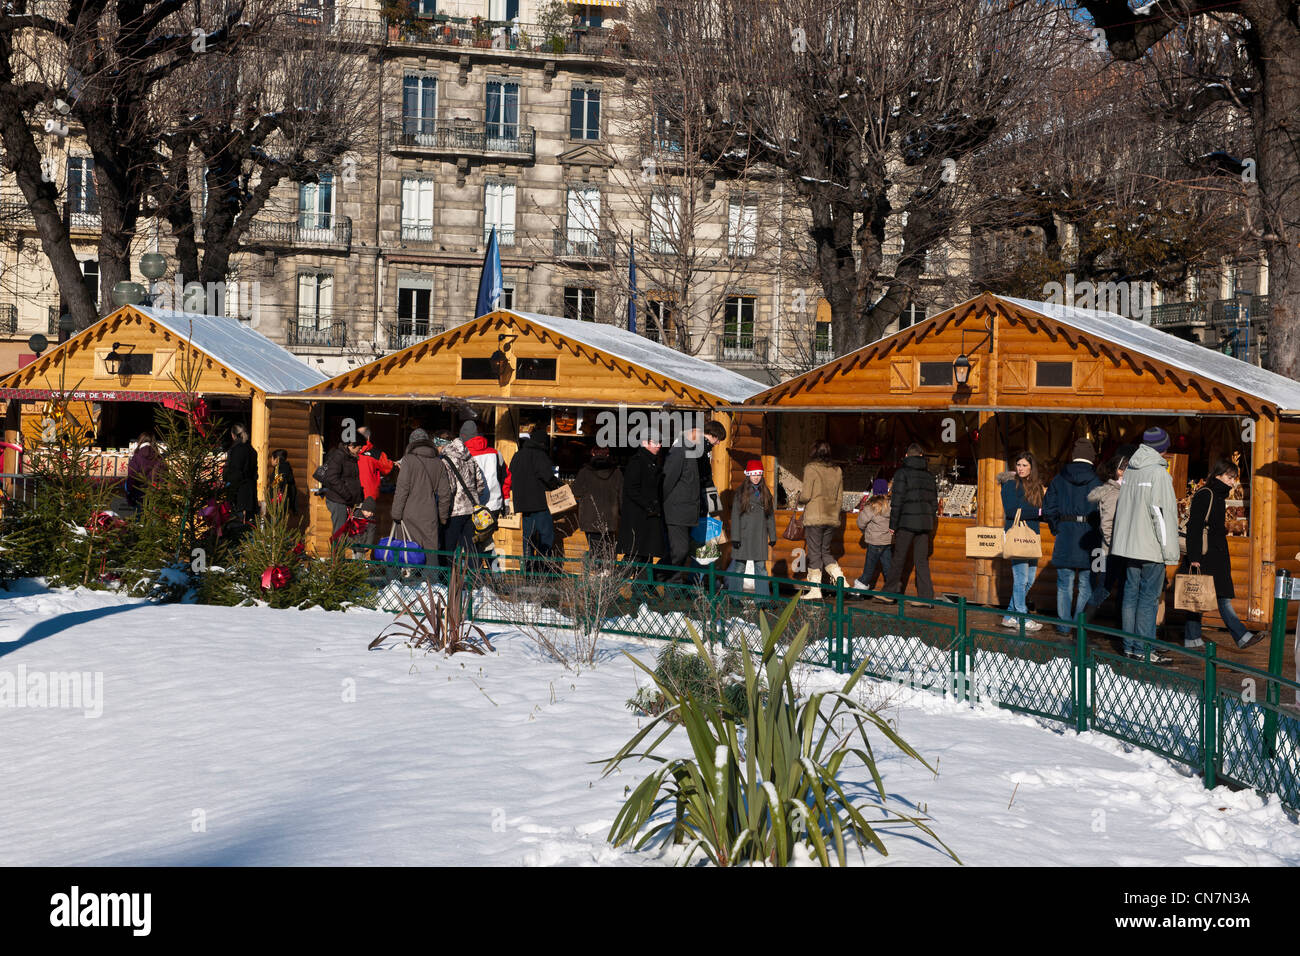 France, Isère, Grenoble, le marché de Noël sur la Place Victo Hugo Photo  Stock - Alamy